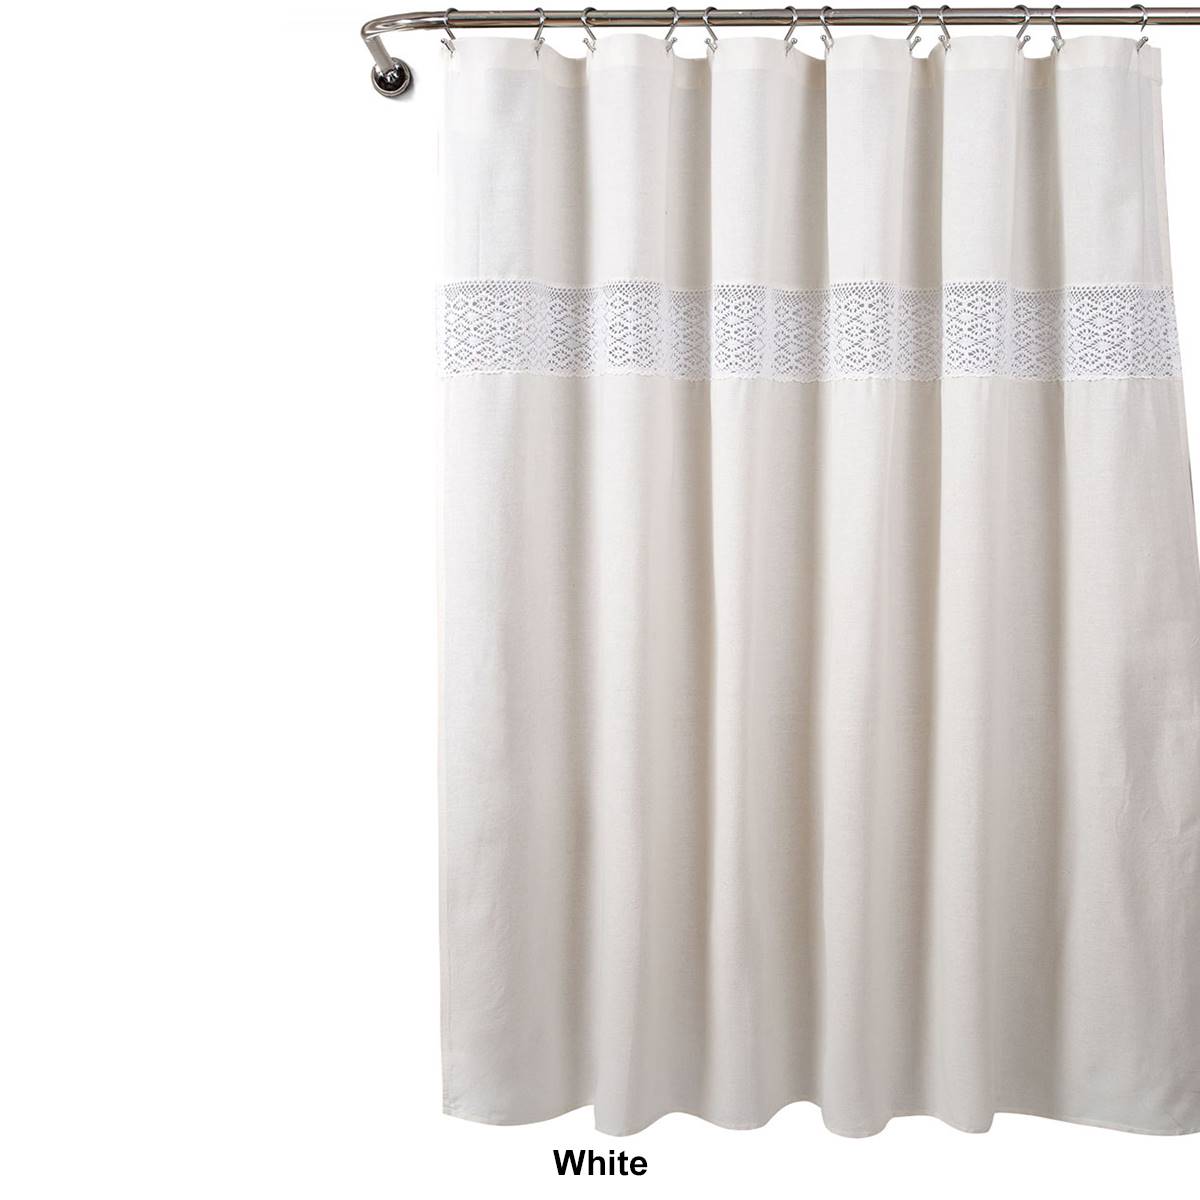 Lush Decor(R) Dana Lace Shower Curtain